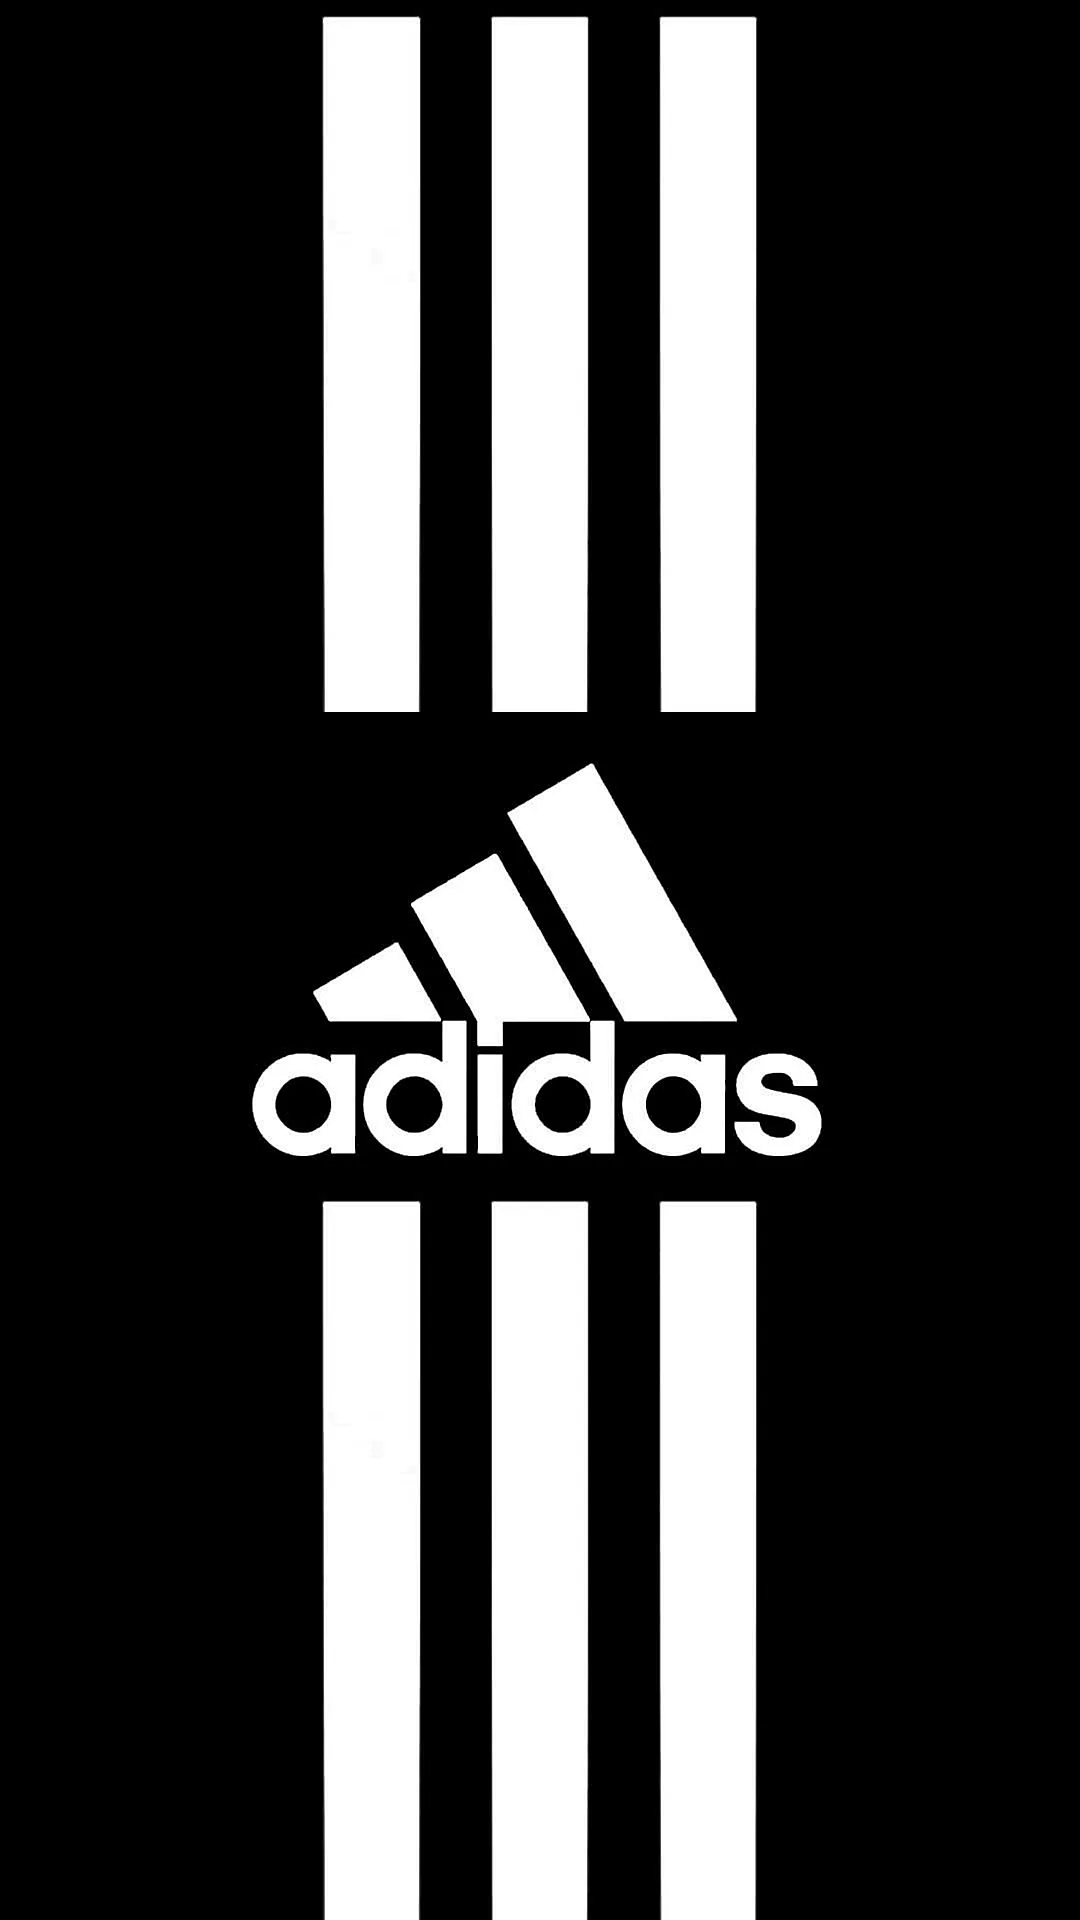 Adidas logo 2020